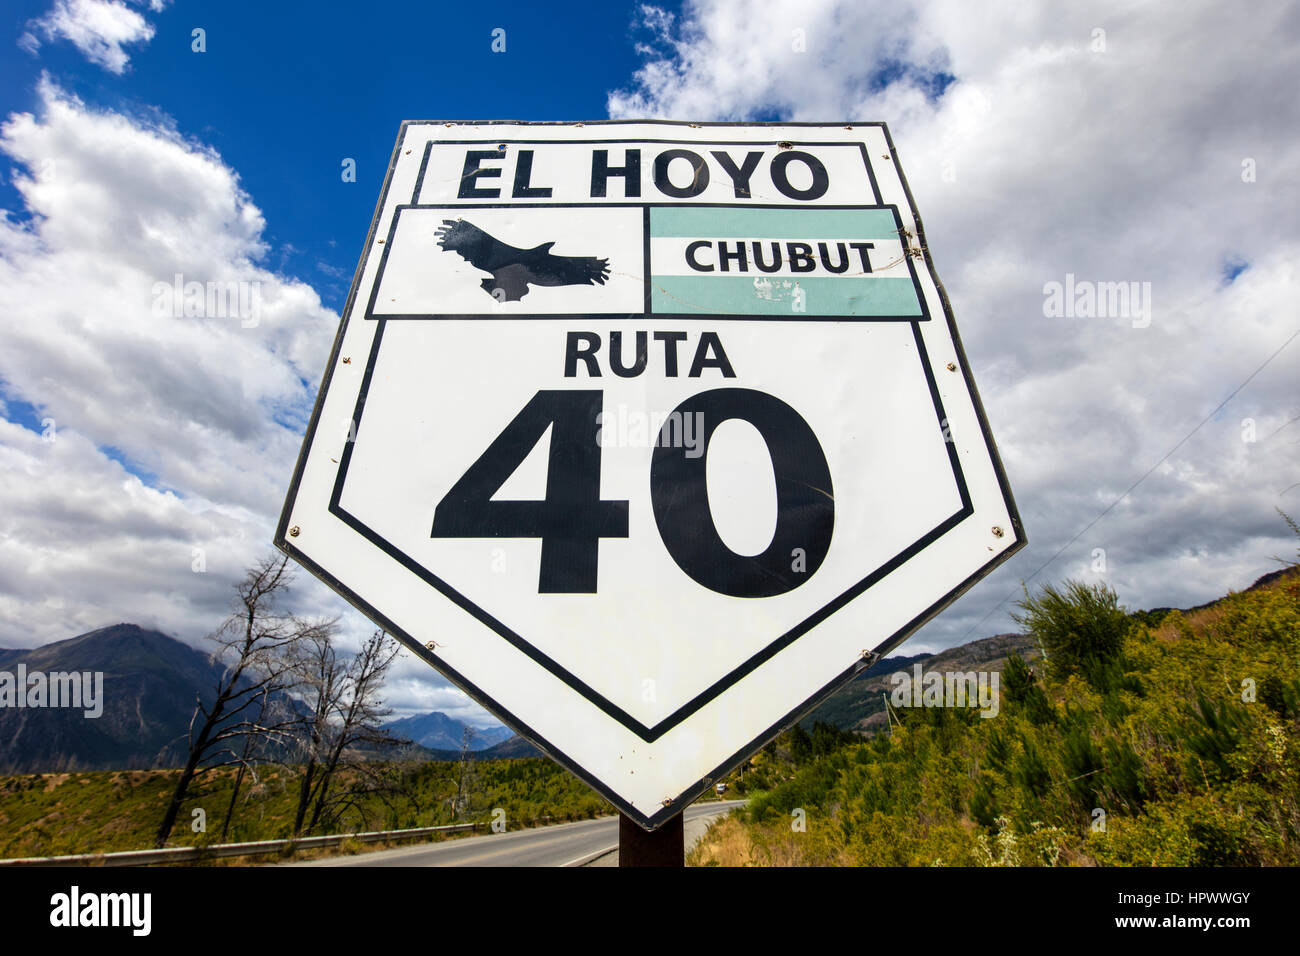 Ruta 40 El Hoyo señales de carretera. Chubut, Patagonia, Argentina. Foto de stock